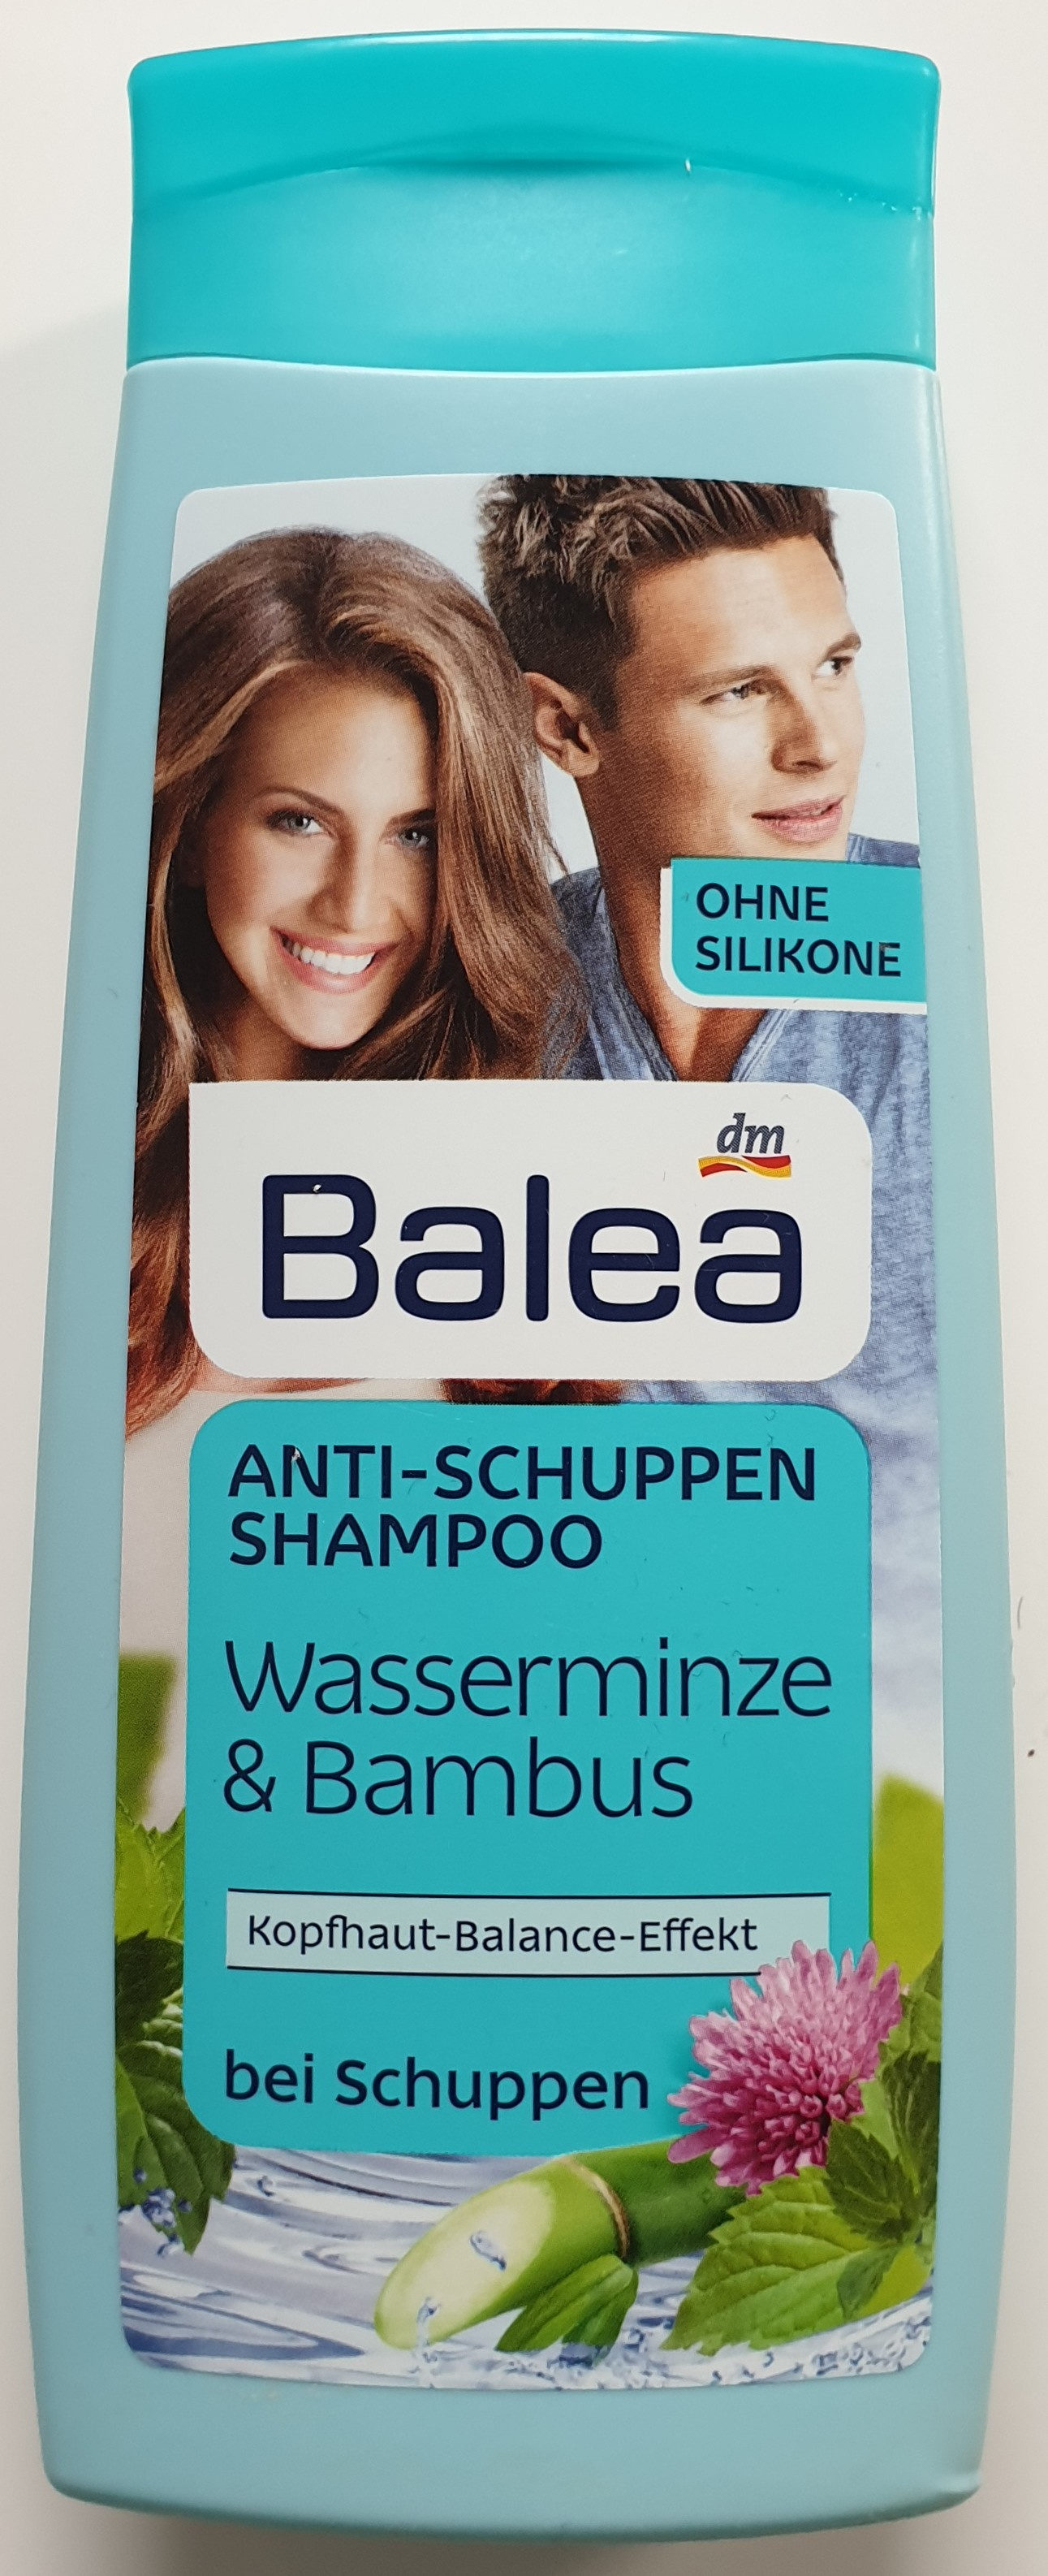 Anti-Schuppen Shampoo Wasserminze & Bambus - Produit - de